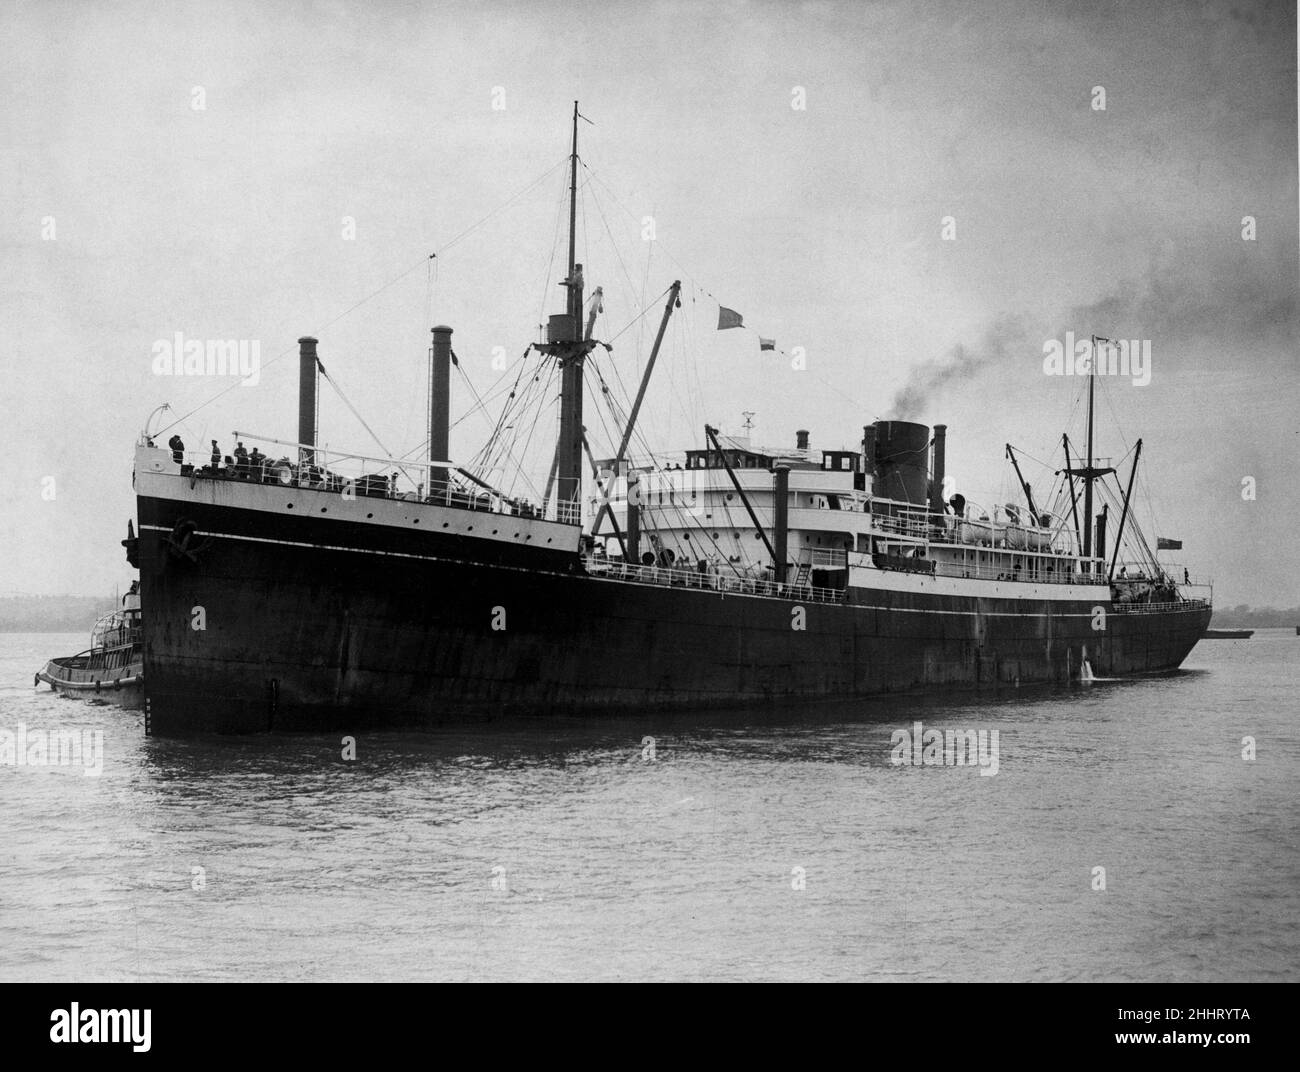 Zealandia, auch bekannt als S.S. Zealandia und mit dem Spitznamen "Z" (oder "Zed"), war ein historisch bedeutsamer, 6.683 Tonnen schwerer, mehrstockiger, einschiffiger australischer Fracht- und Passagierschiff. Es trat in den Dienst im Jahr 1910 und diente als Truppenschiff im Ersten und Zweiten Weltkrieg Zwischen 1940 und 41 transportierte Zealandia den größten Teil der unglücklichen australischen 8th Division. Seine Besatzung war das letzte alliierte Personal, das HMAS Sydney sah, das 1941 mit allen Händen verloren ging. Zealandia selbst ist bei den Luftangriffen auf Darwin am 19. Februar 1942 verloren gegangen. Stockfoto